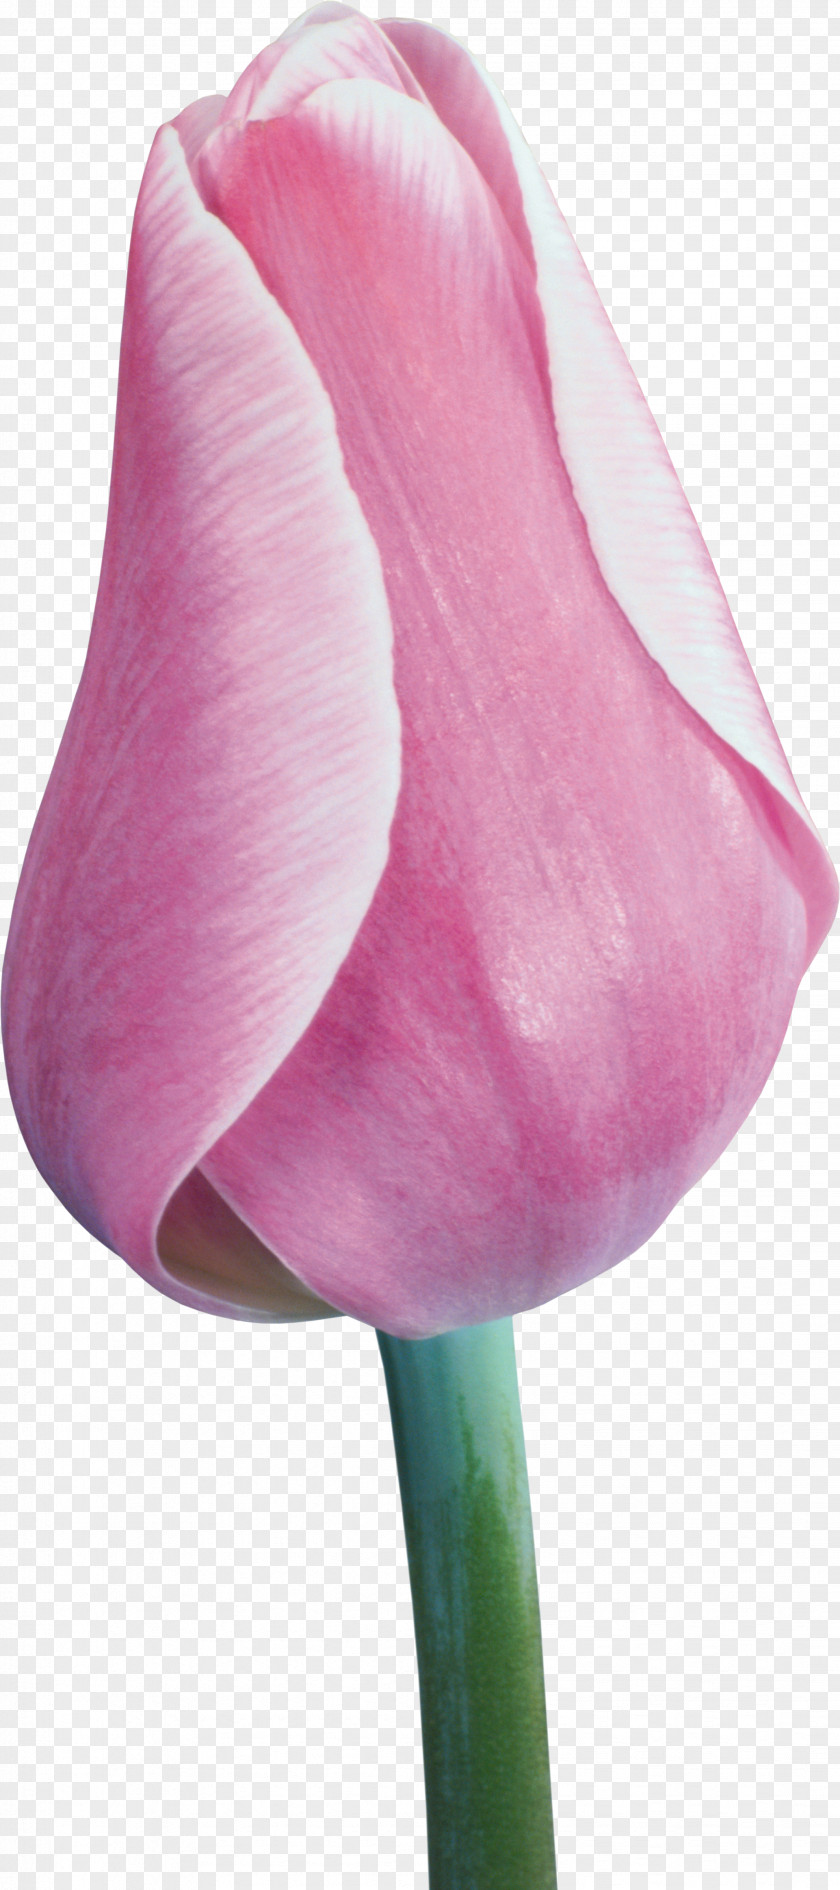 Tulip Flower Liliaceae Plant Stem Clip Art PNG